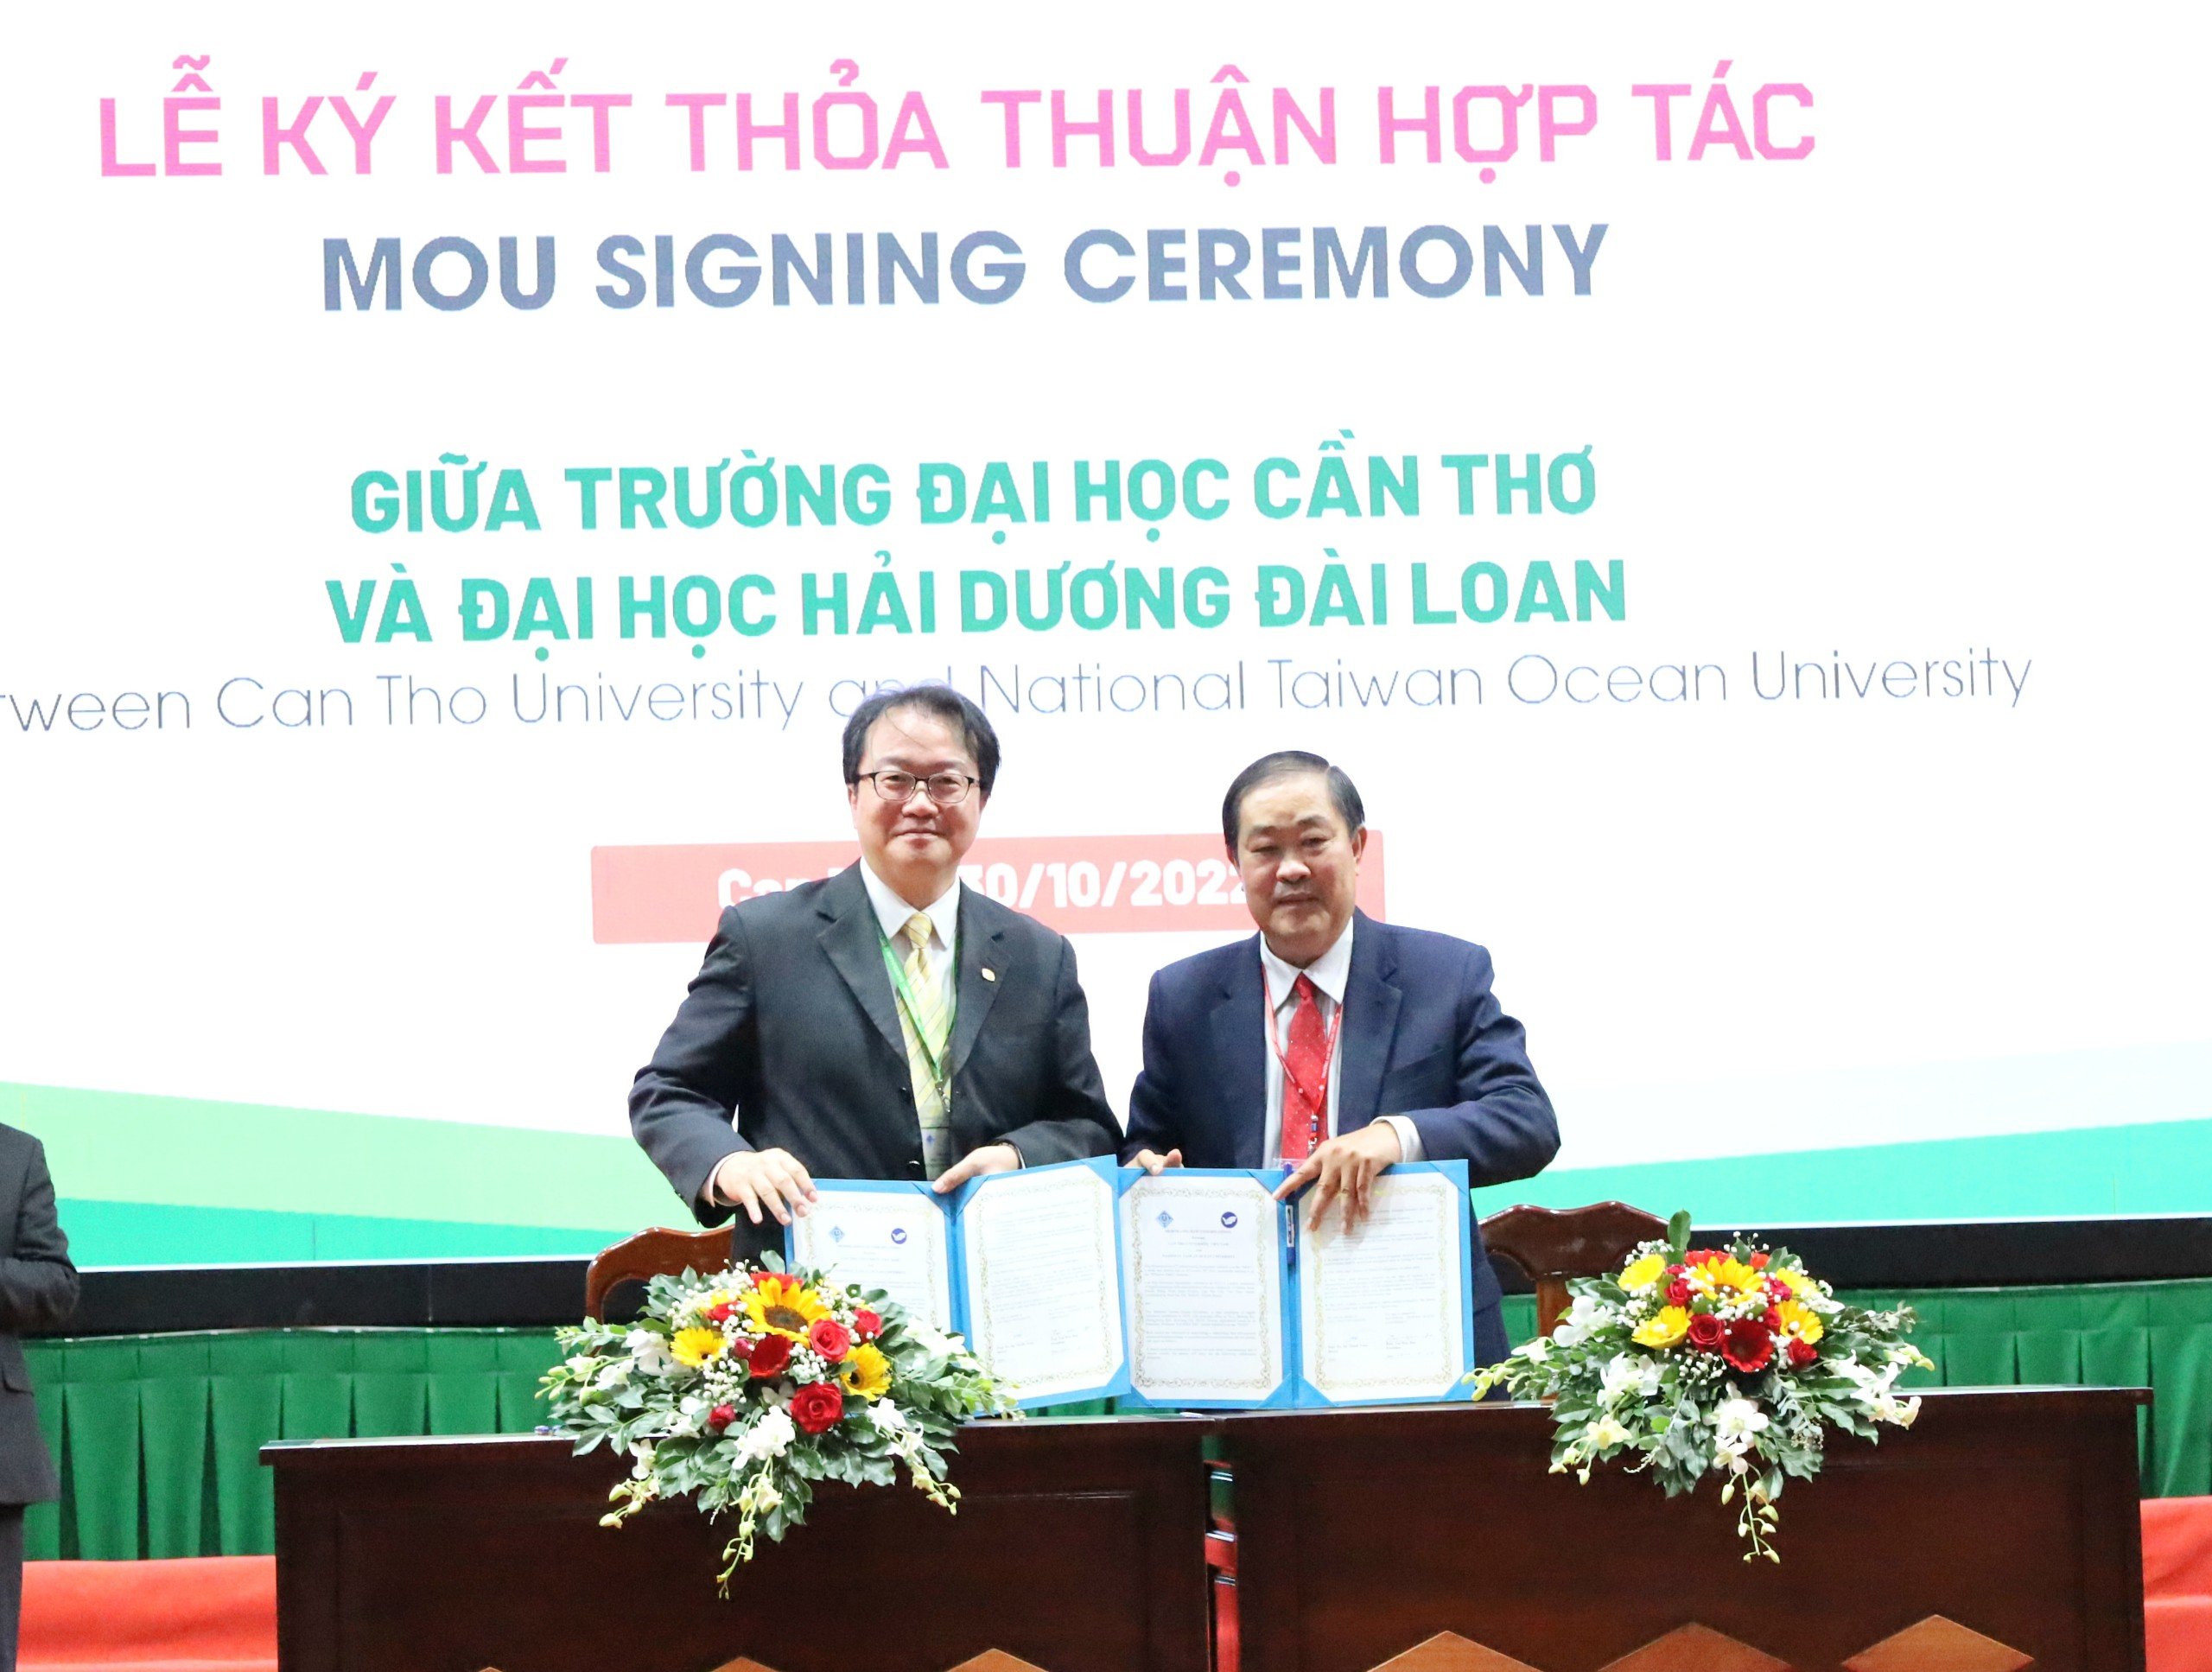 Ký kết thỏa thuận hợp tác giữa Trường Đại học Cần Thơ và Đại học Hải dương Đài Loan.